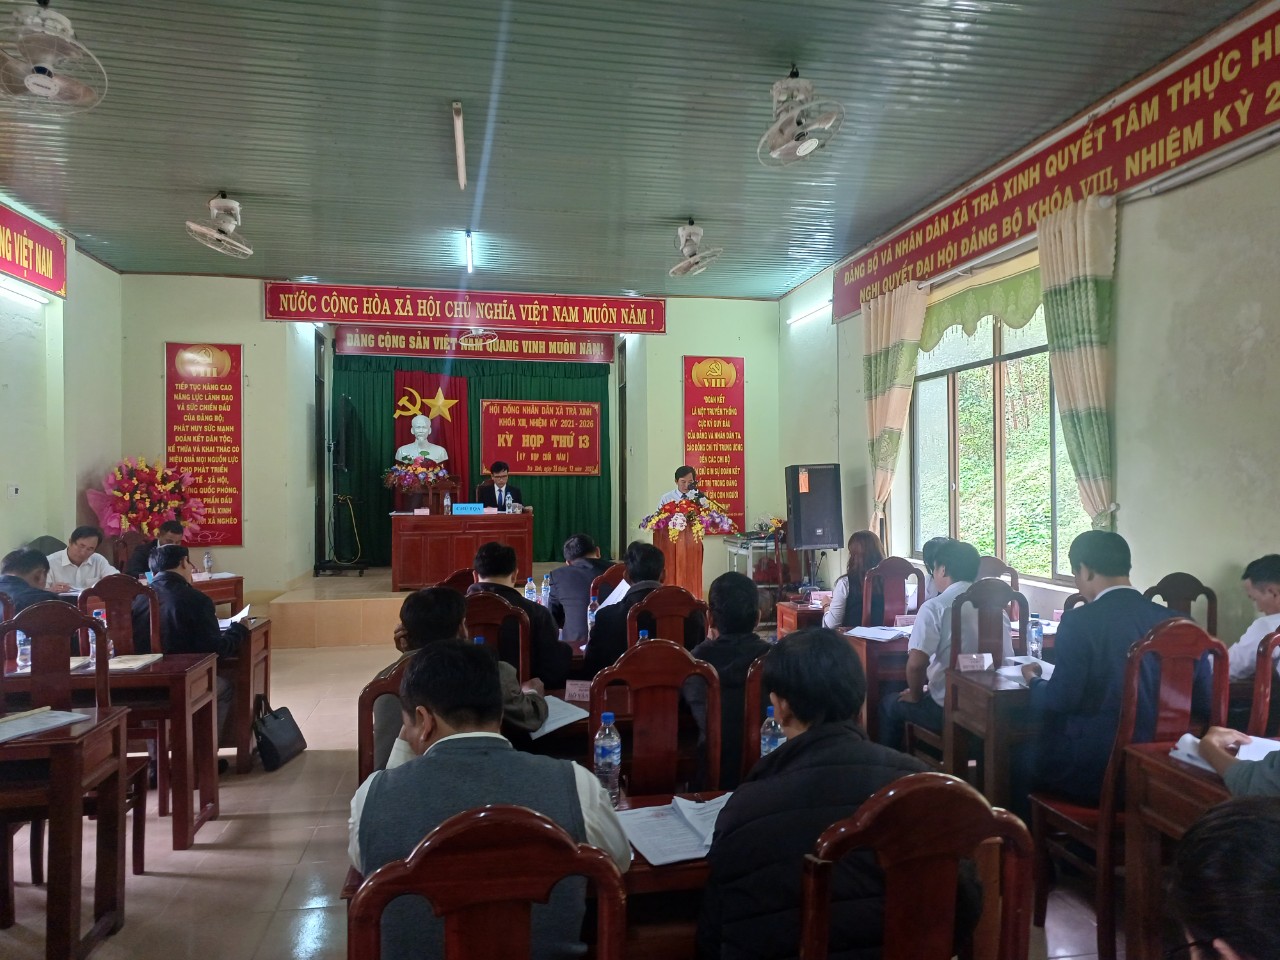 HĐND xã Trà Xinh, Khóa VIII, tổ chức kỳ họp lần thứ 13